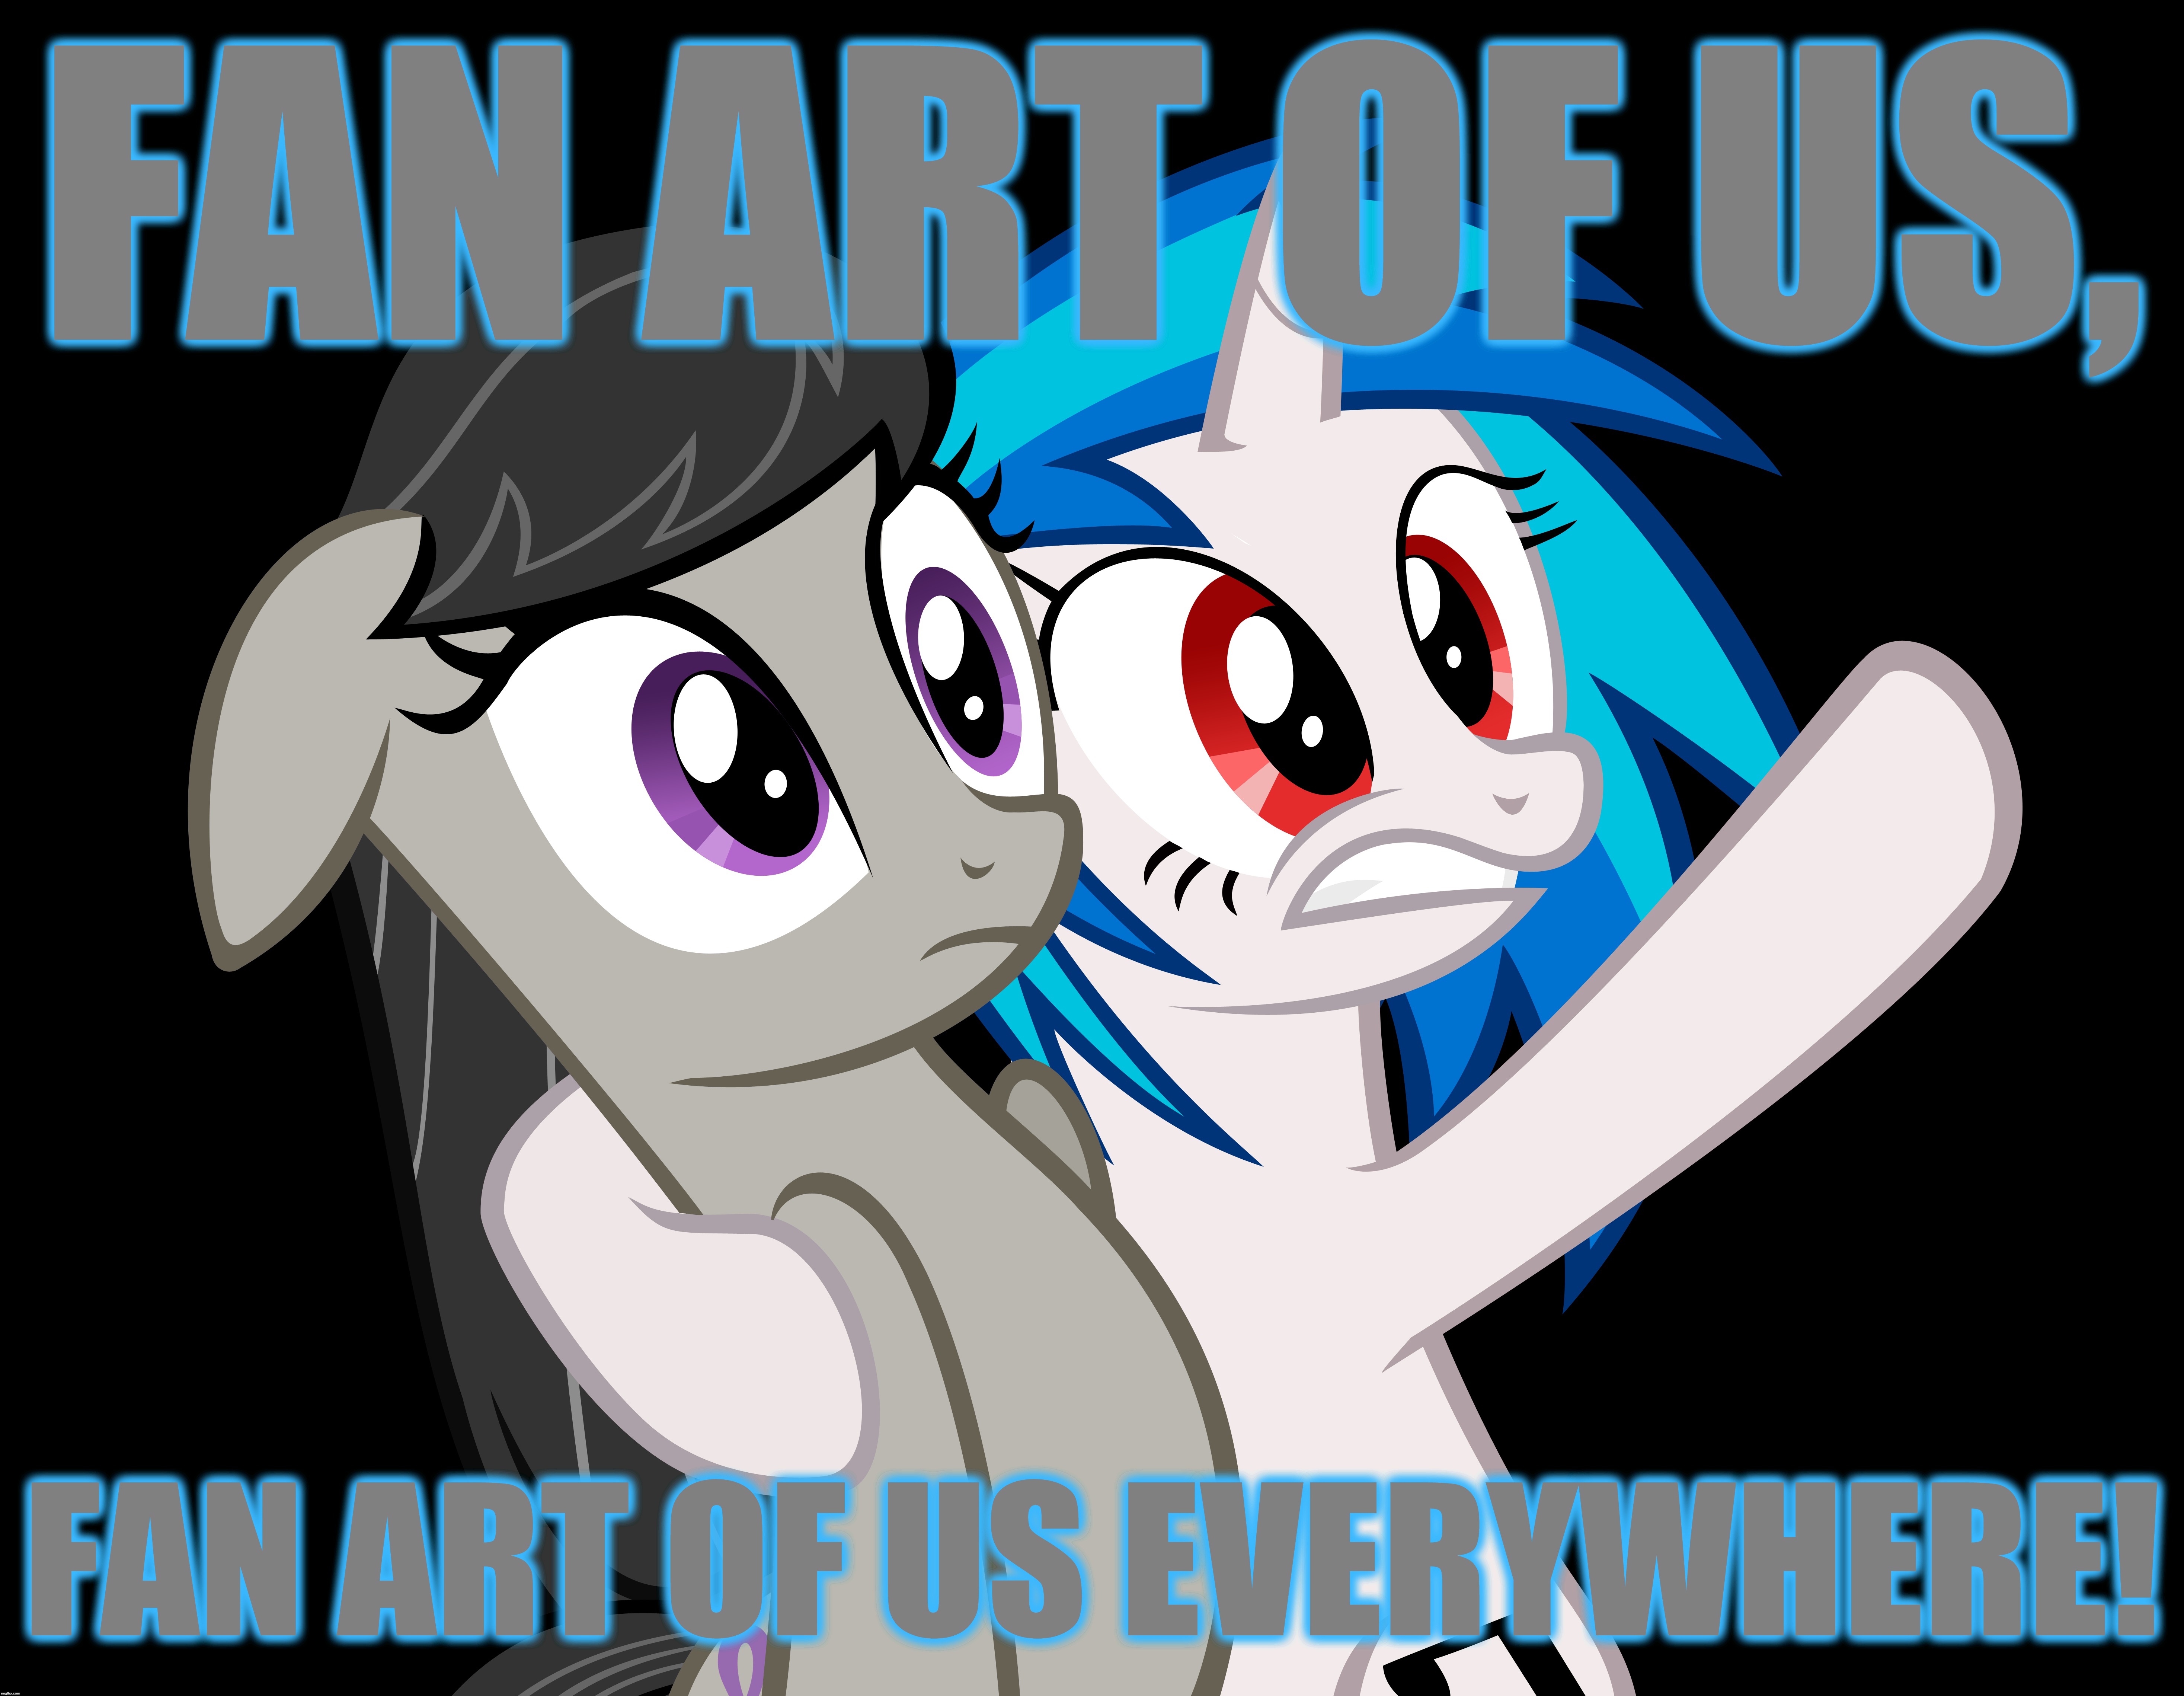 FAN ART OF US, FAN ART OF US EVERYWHERE! | made w/ Imgflip meme maker